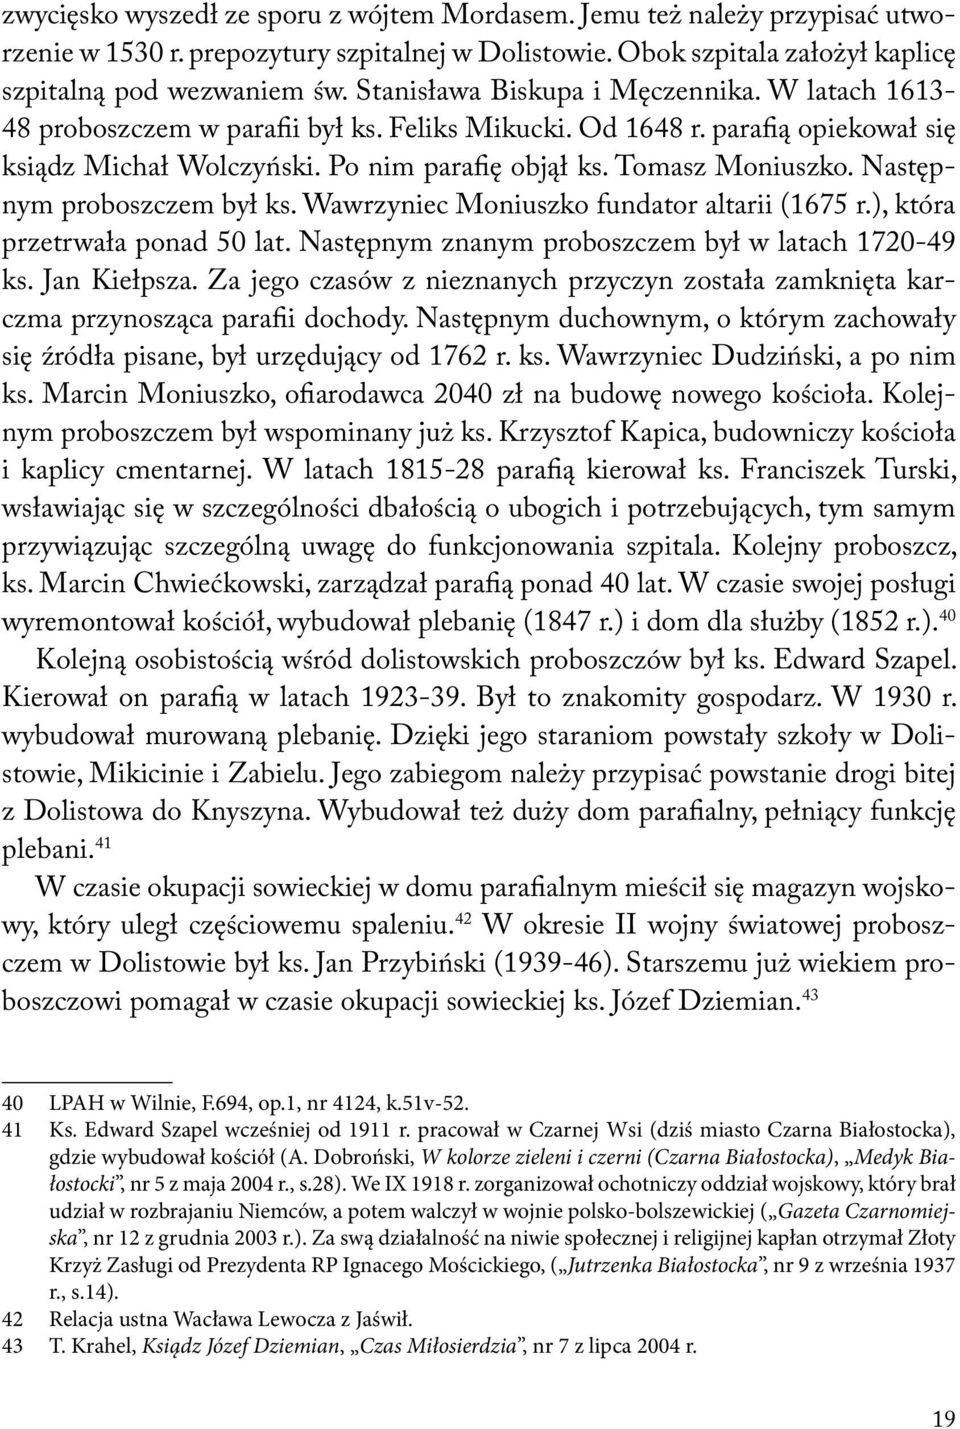 Następnym proboszczem był ks. Wawrzyniec Moniuszko fundator altarii (1675 r.), która przetrwała ponad 50 lat. Następnym znanym proboszczem był w latach 1720-49 ks. Jan Kiełpsza.